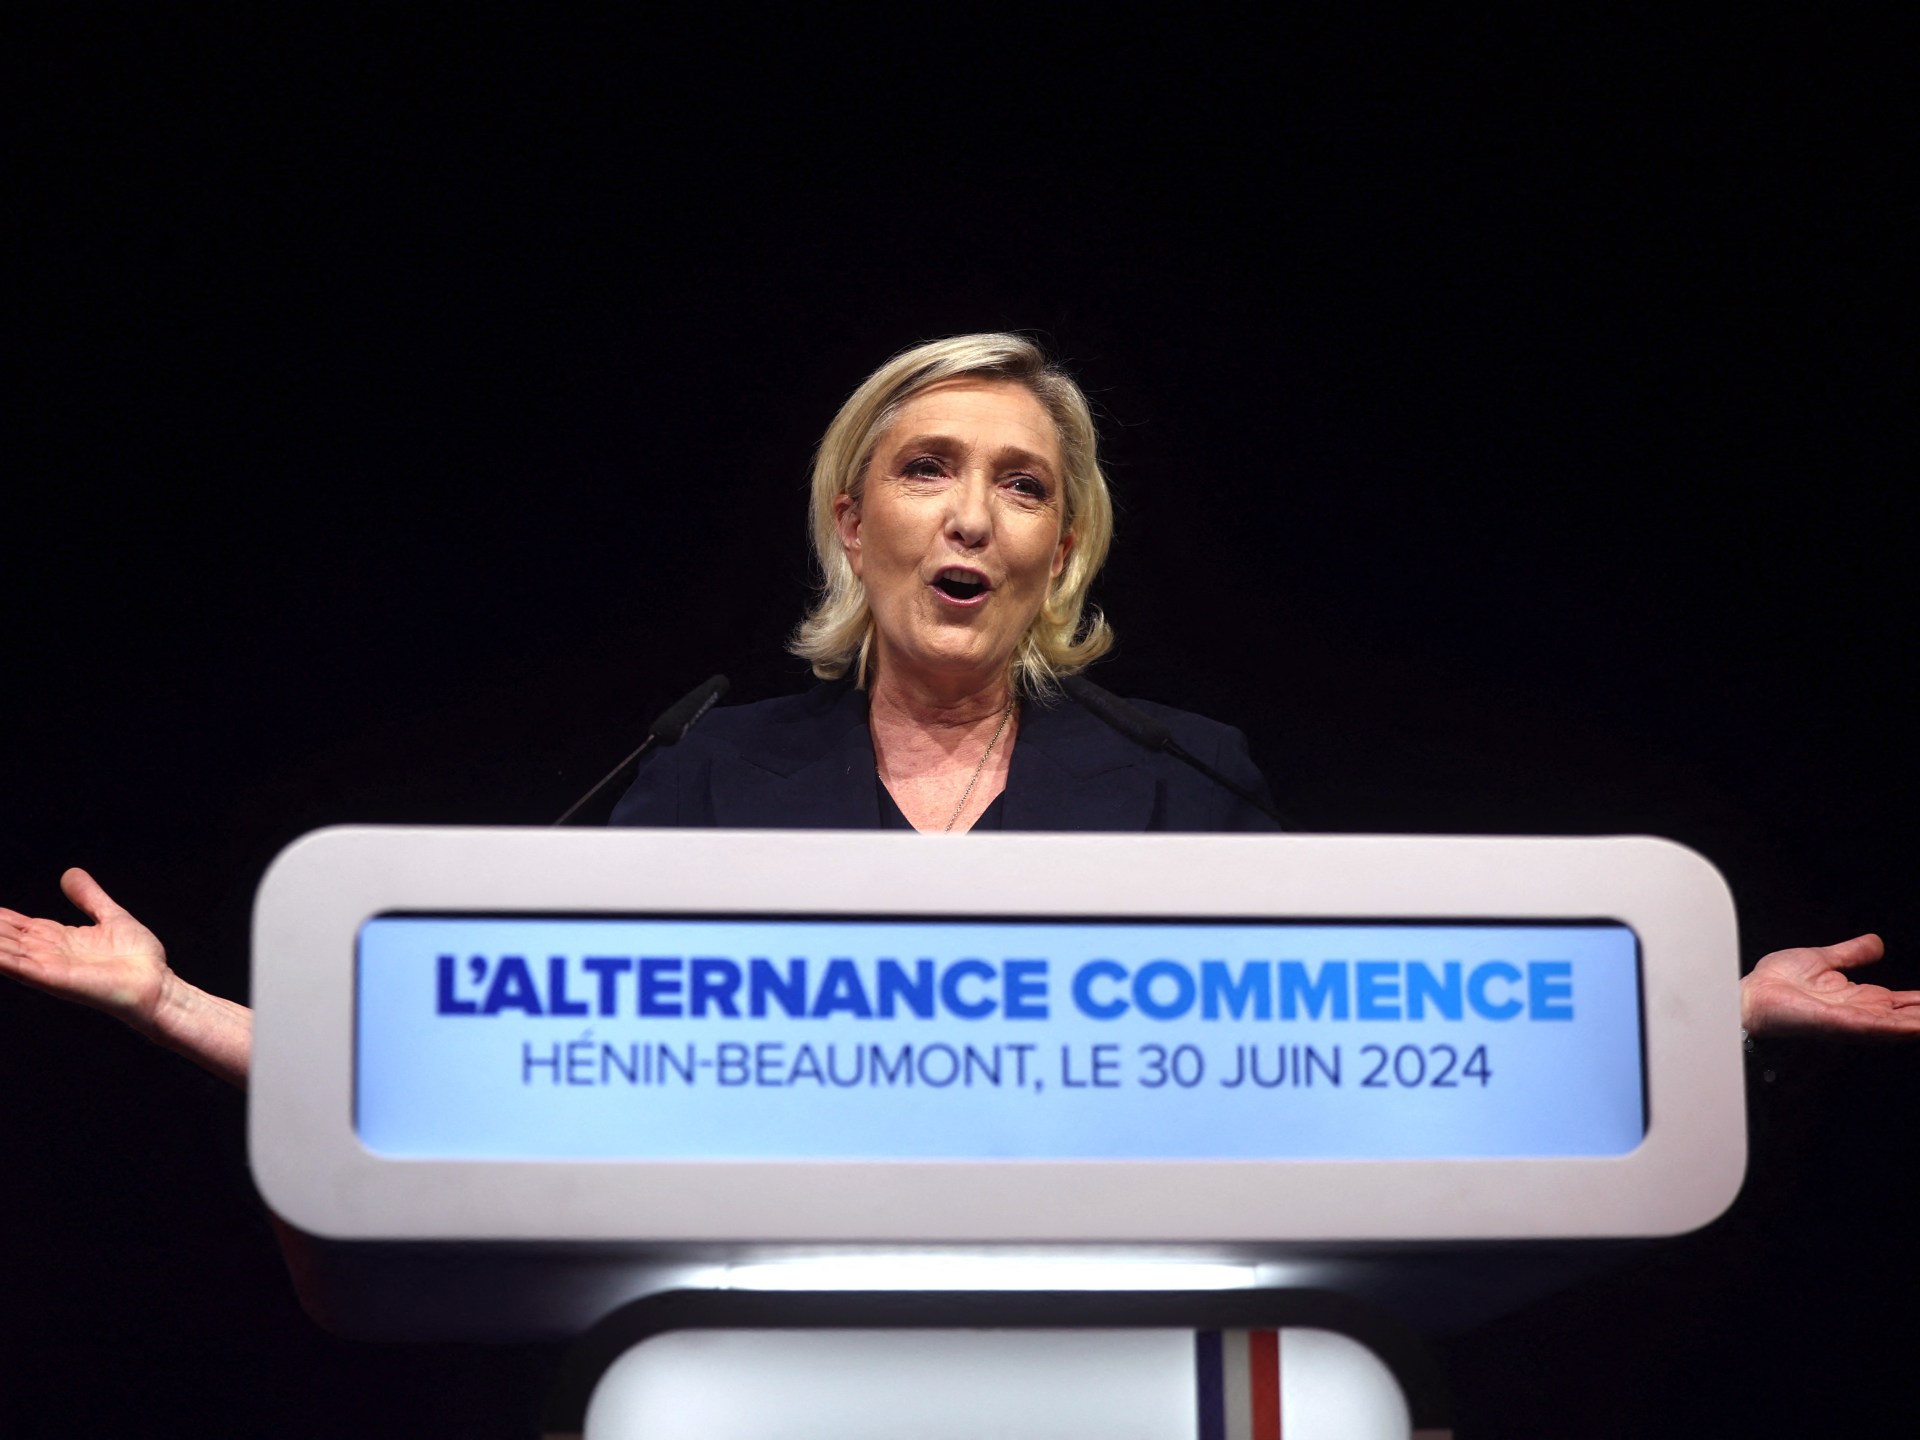 اليمين المتطرف في فرنسا يفوز بالجولة الأولى من الانتخابات البرلمانية | انتخابات